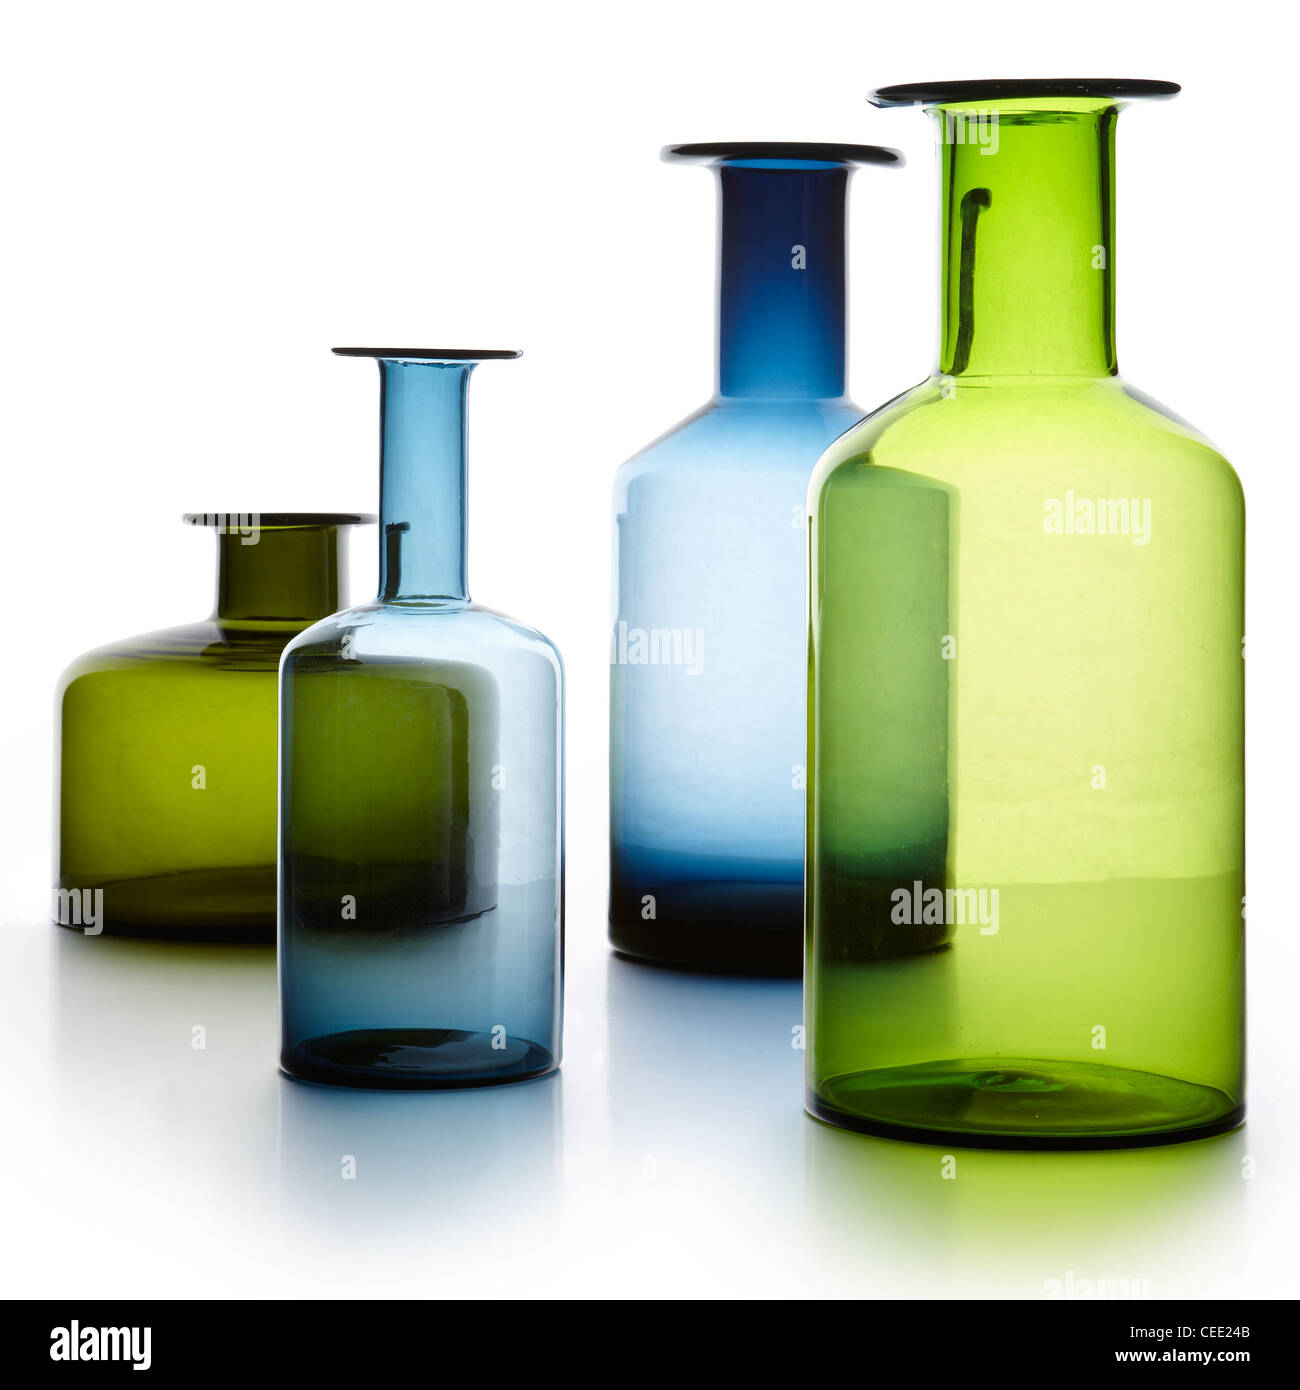 4 glass vases Stock Photo